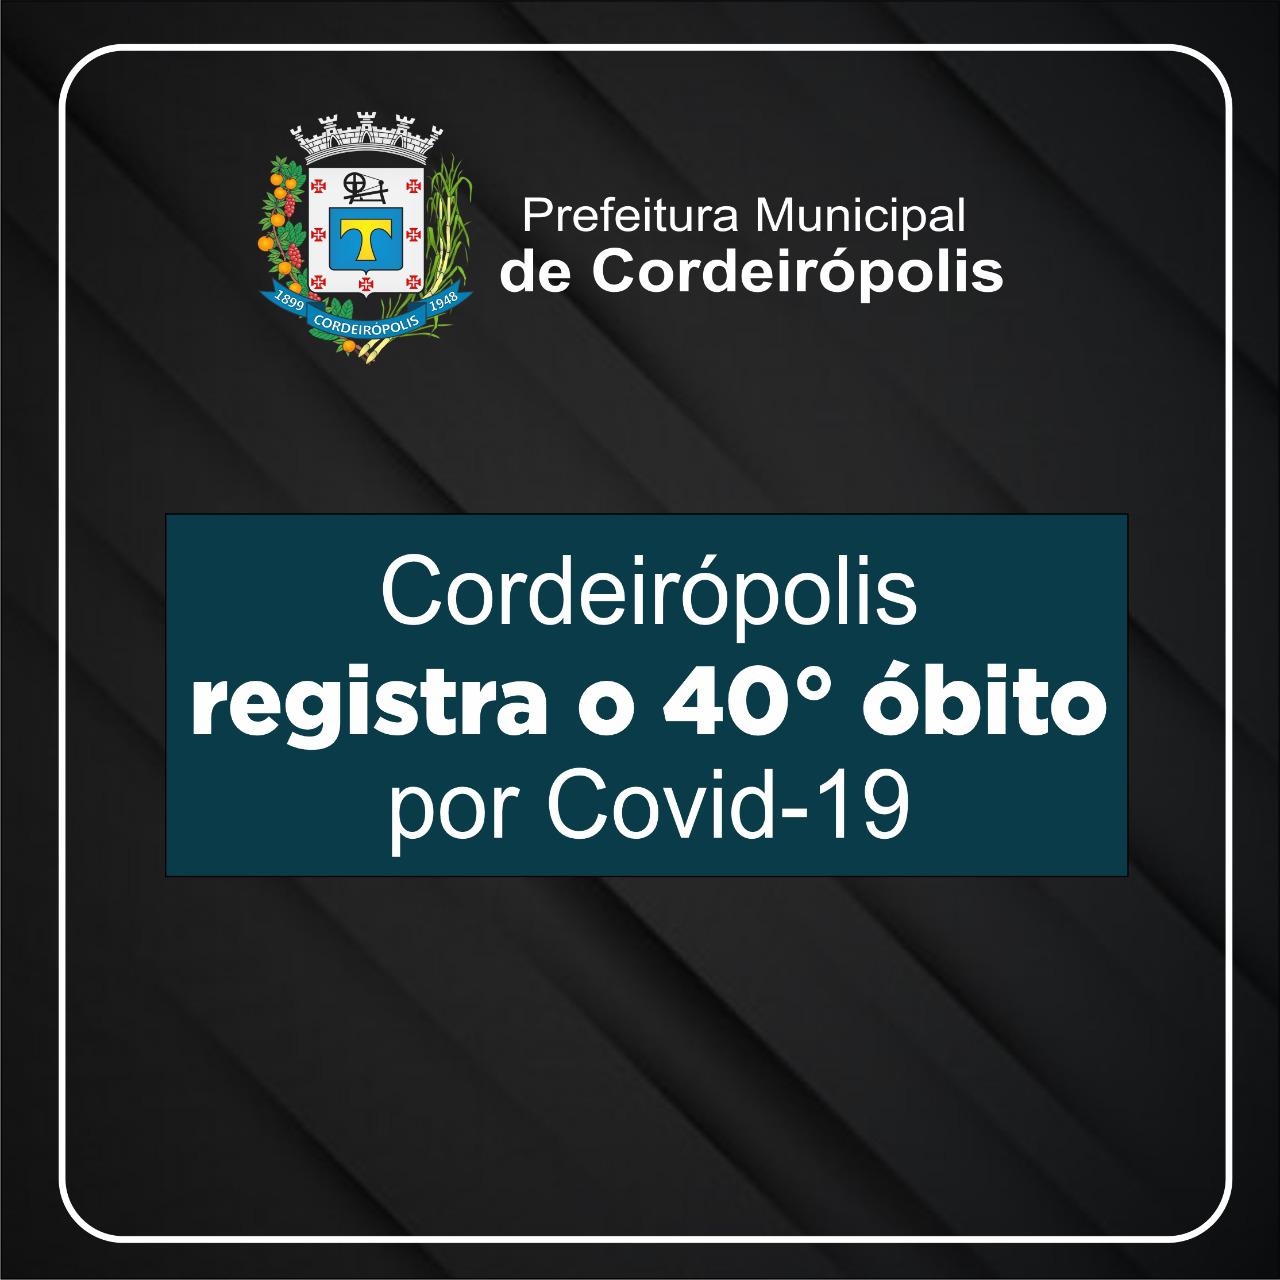 Cordeirópolis registra o 40º óbito de Covid -19